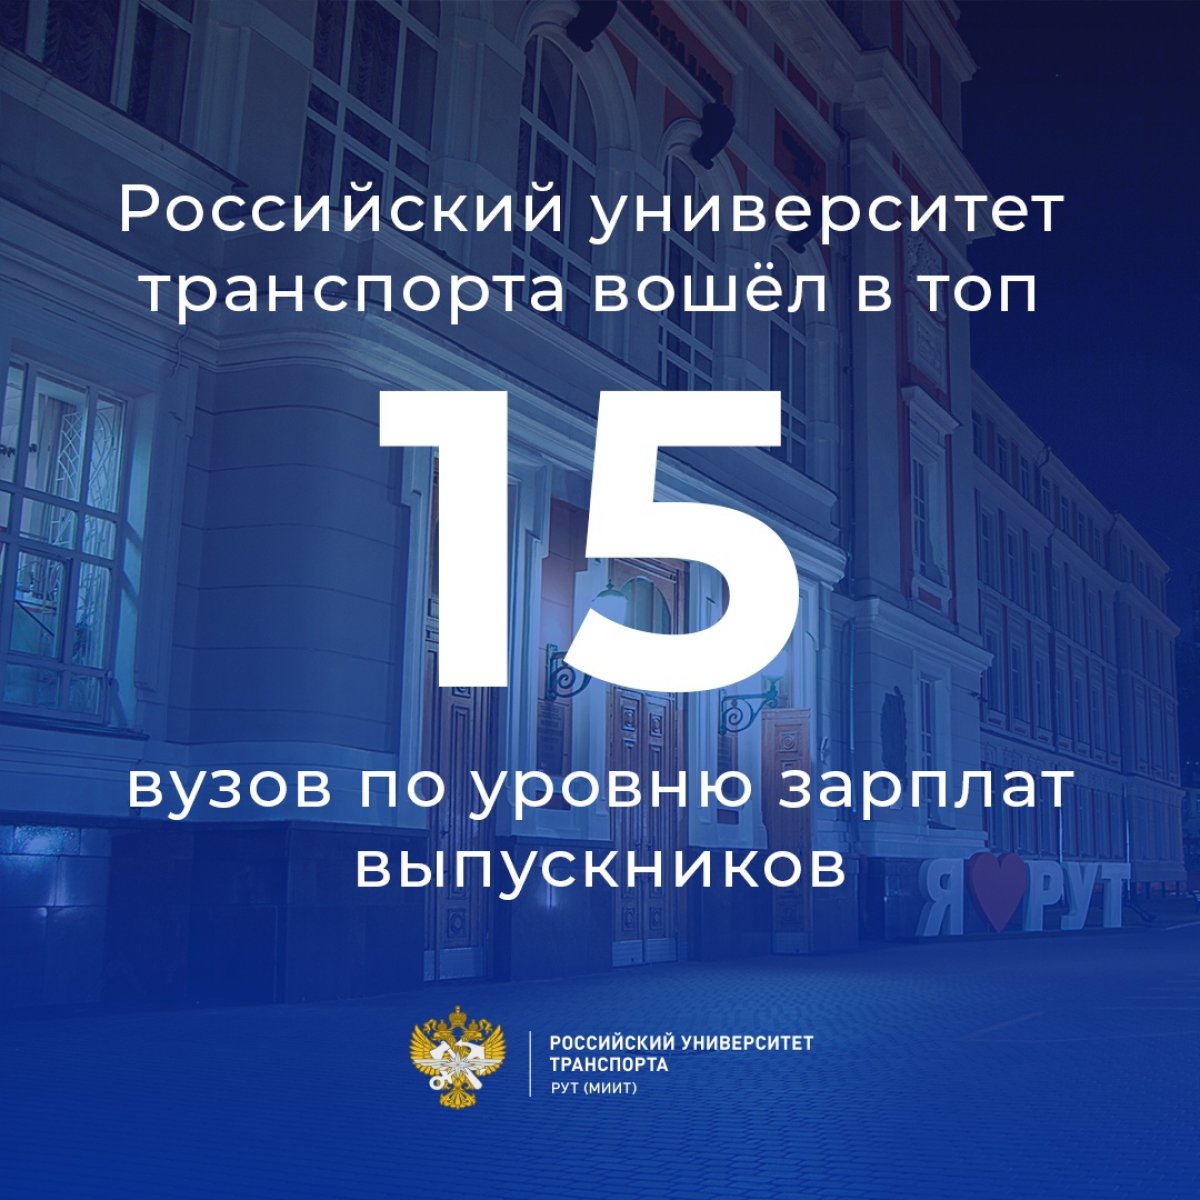 Российский университет транспорта занял 15-е место в рейтинге Superjob среди вузов России по уровню зарплат занятых в ИТ-отрасли молодых специалистов, окончивших вуз в 2013-2018 годах.